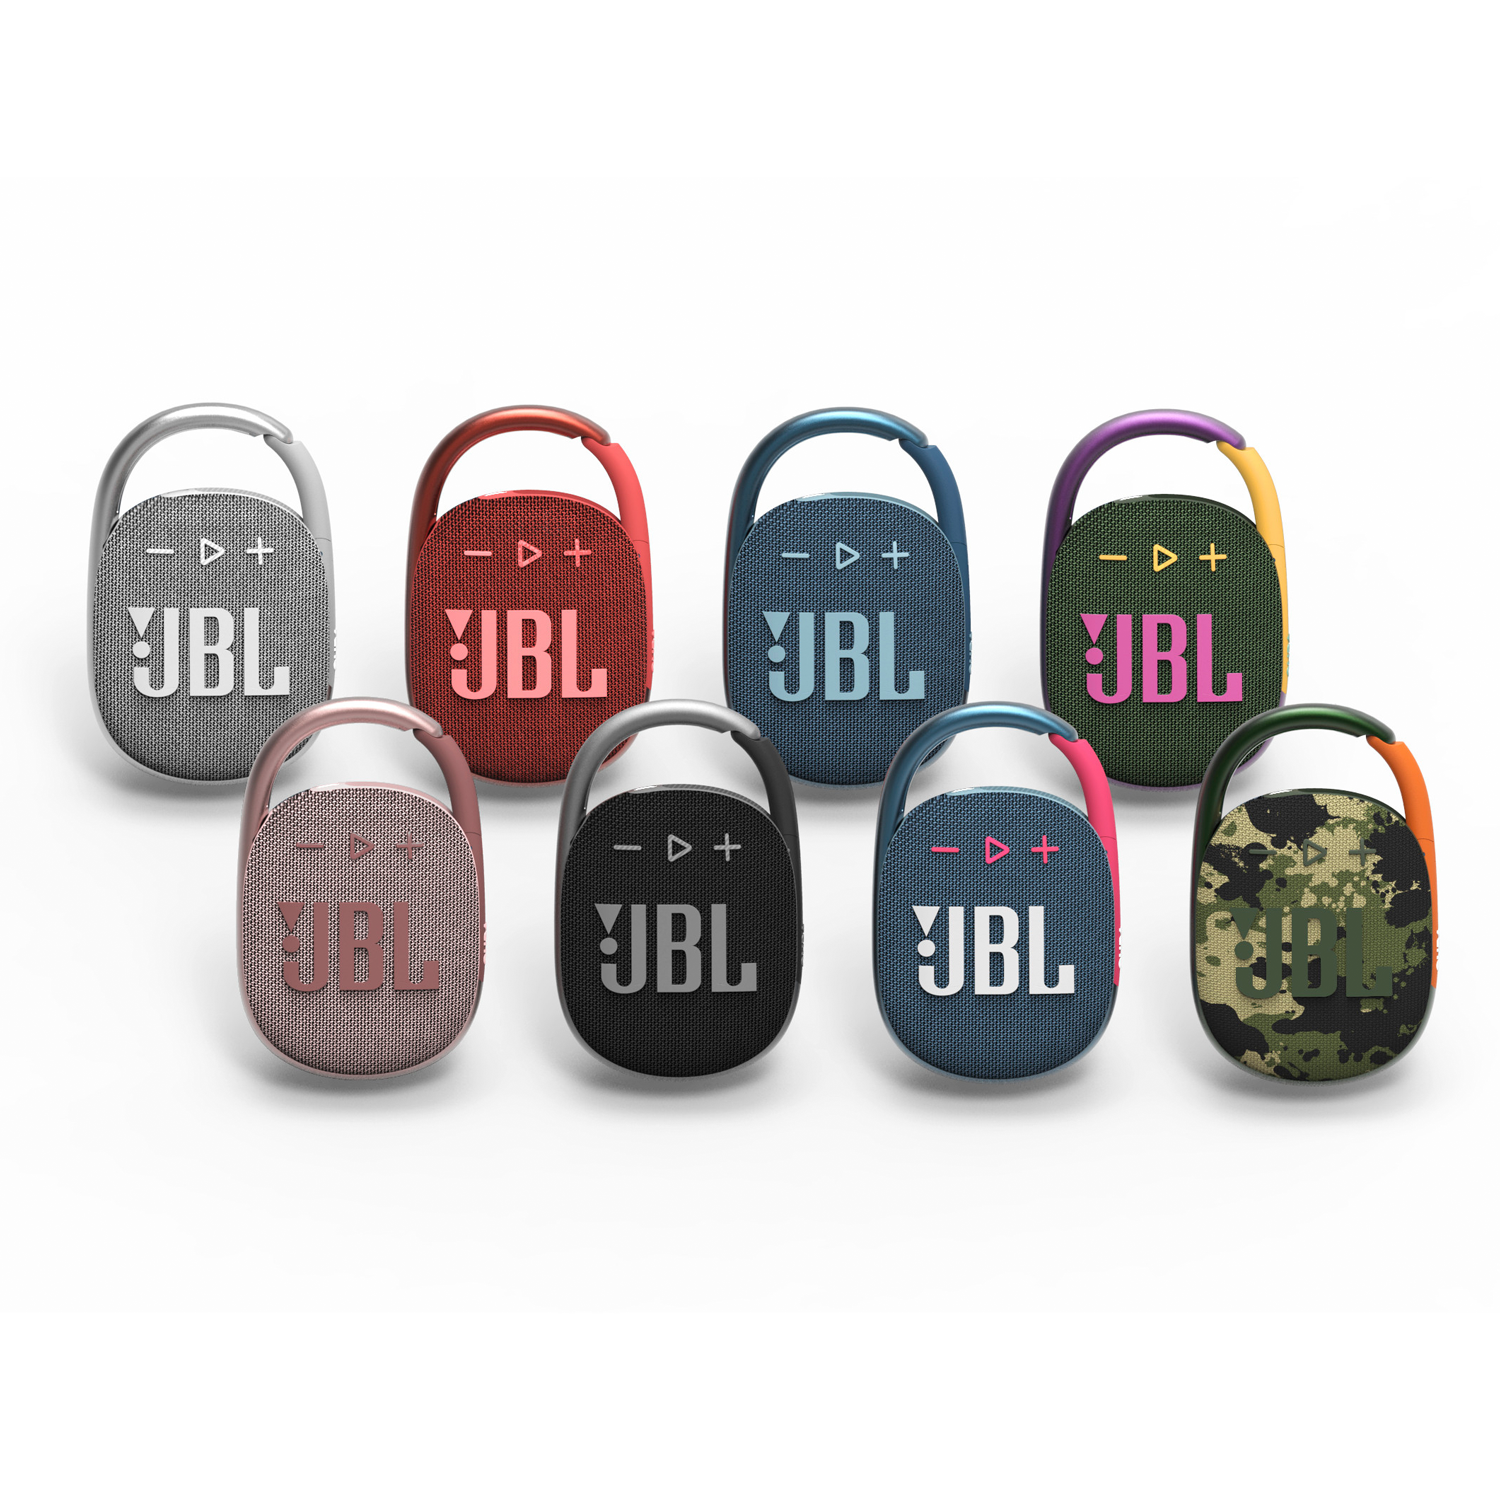 Loa JBL Clip 4 có đến 9 màu chọn lựa.